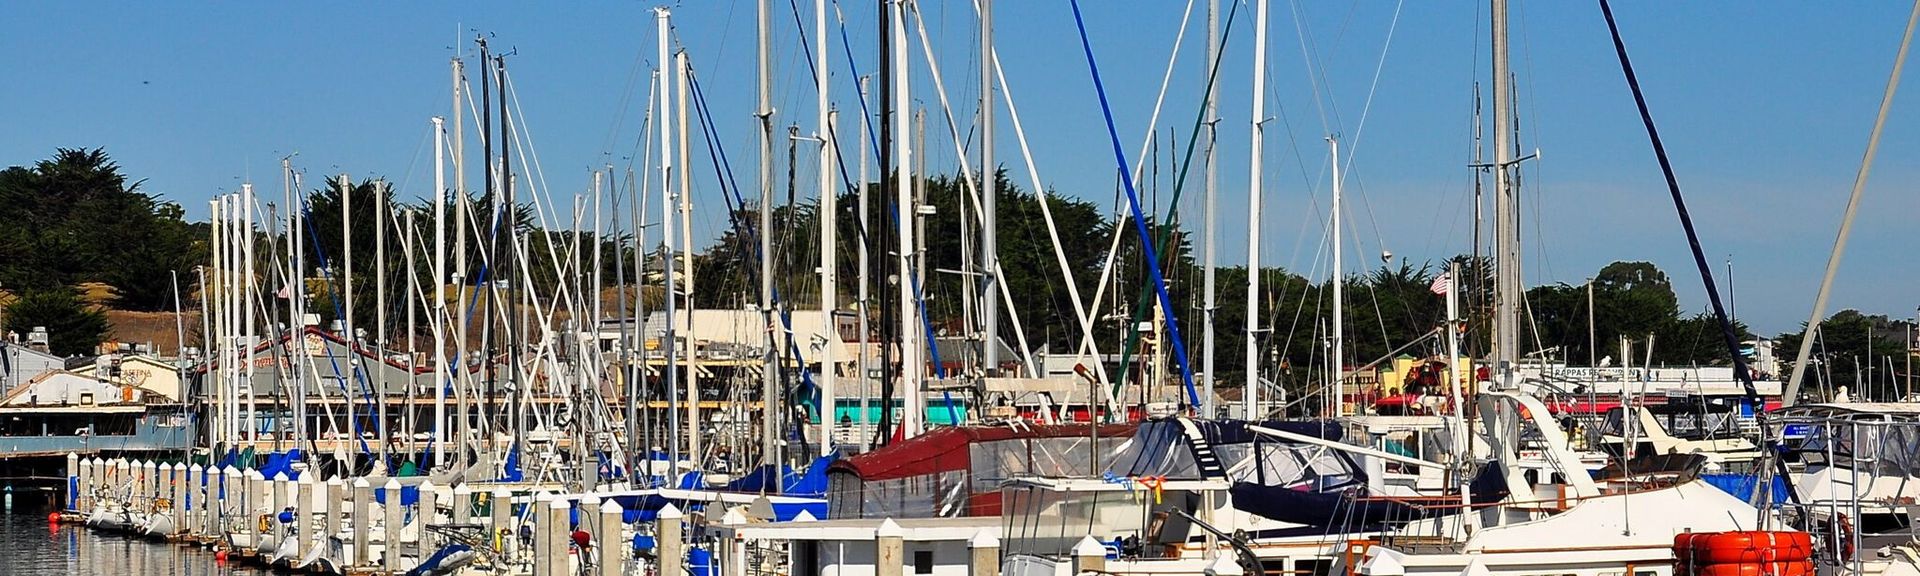 Boats docked in Monterey Harbor